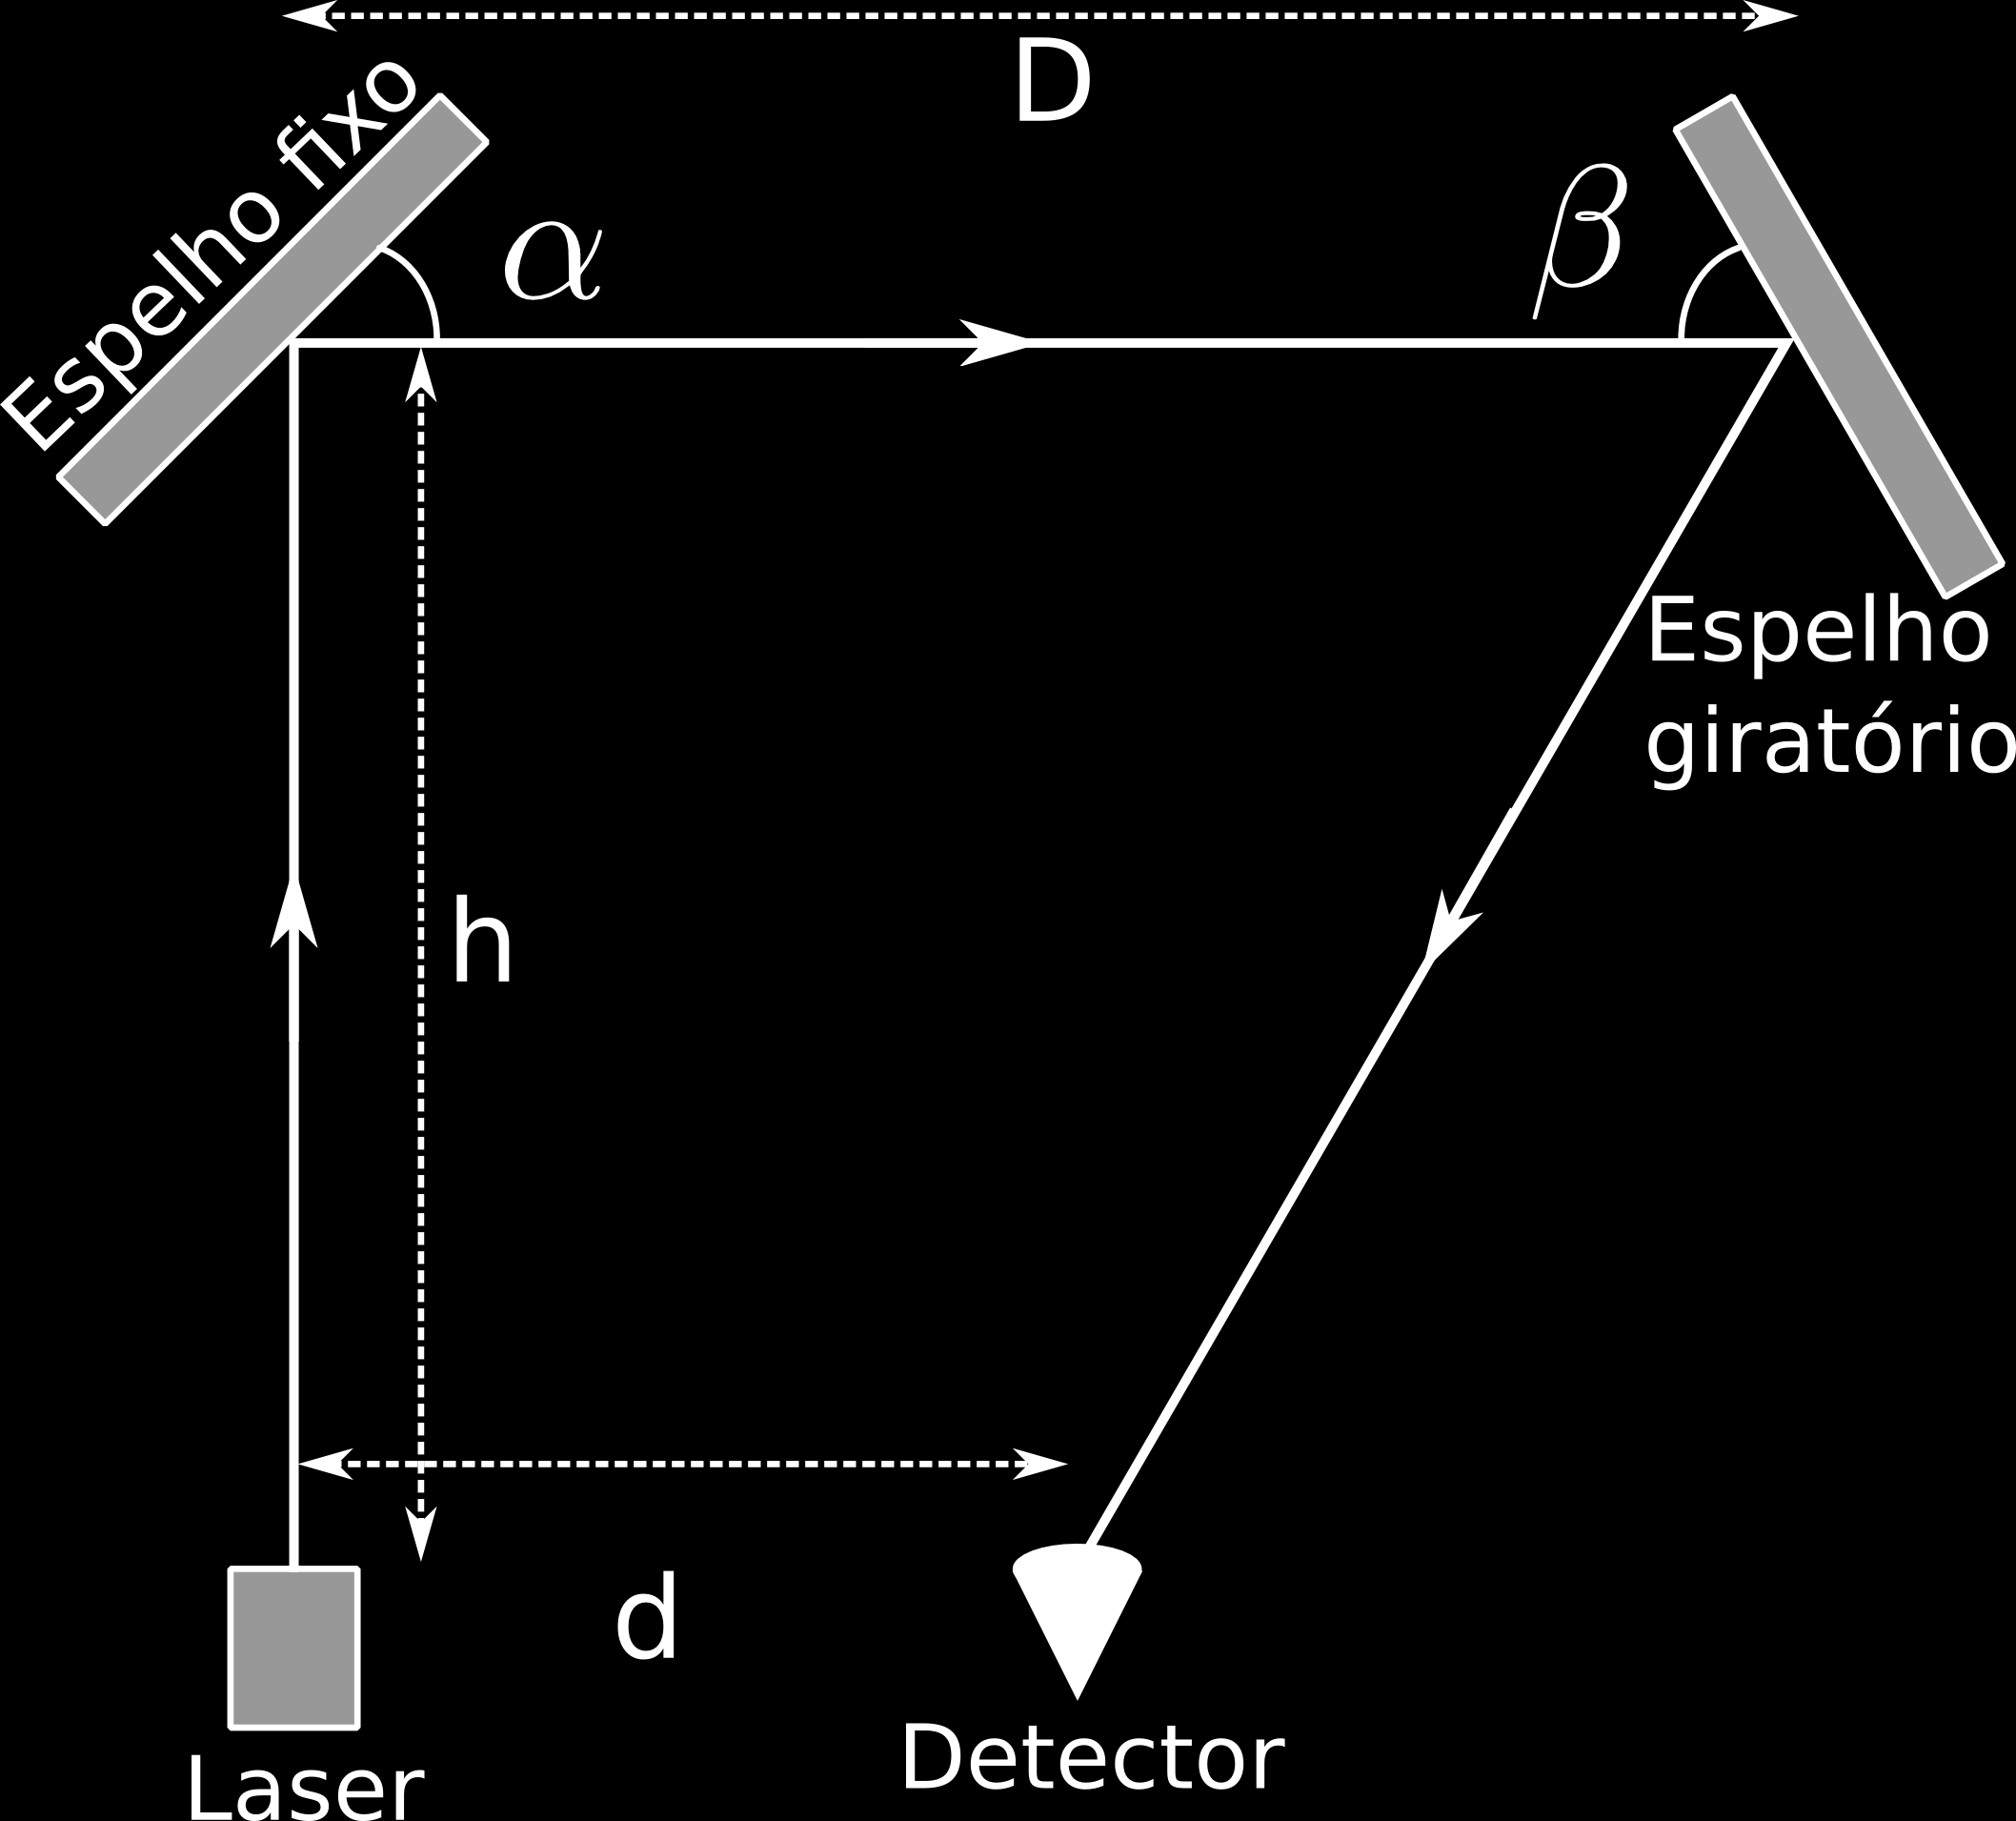 UFG/CS PROCESSO SELETIVO-2014-1 QUESTÃO 49 TIPO-2 A figura a seguir representa um dispositivo óptico constituído por um laser, um espelho fixo, um espelho giratório e um detector.